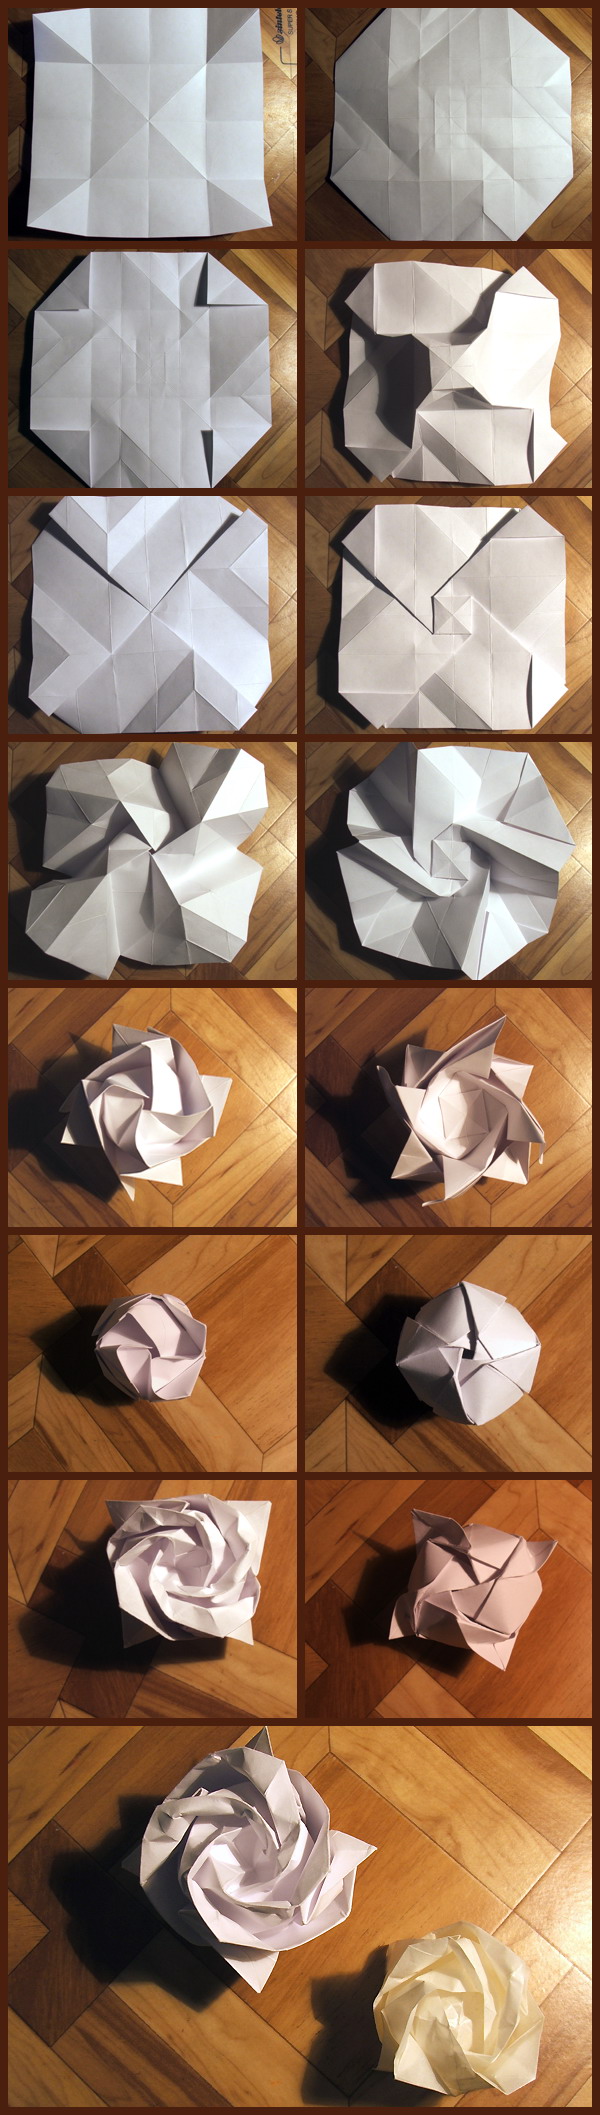 rose origami tuto